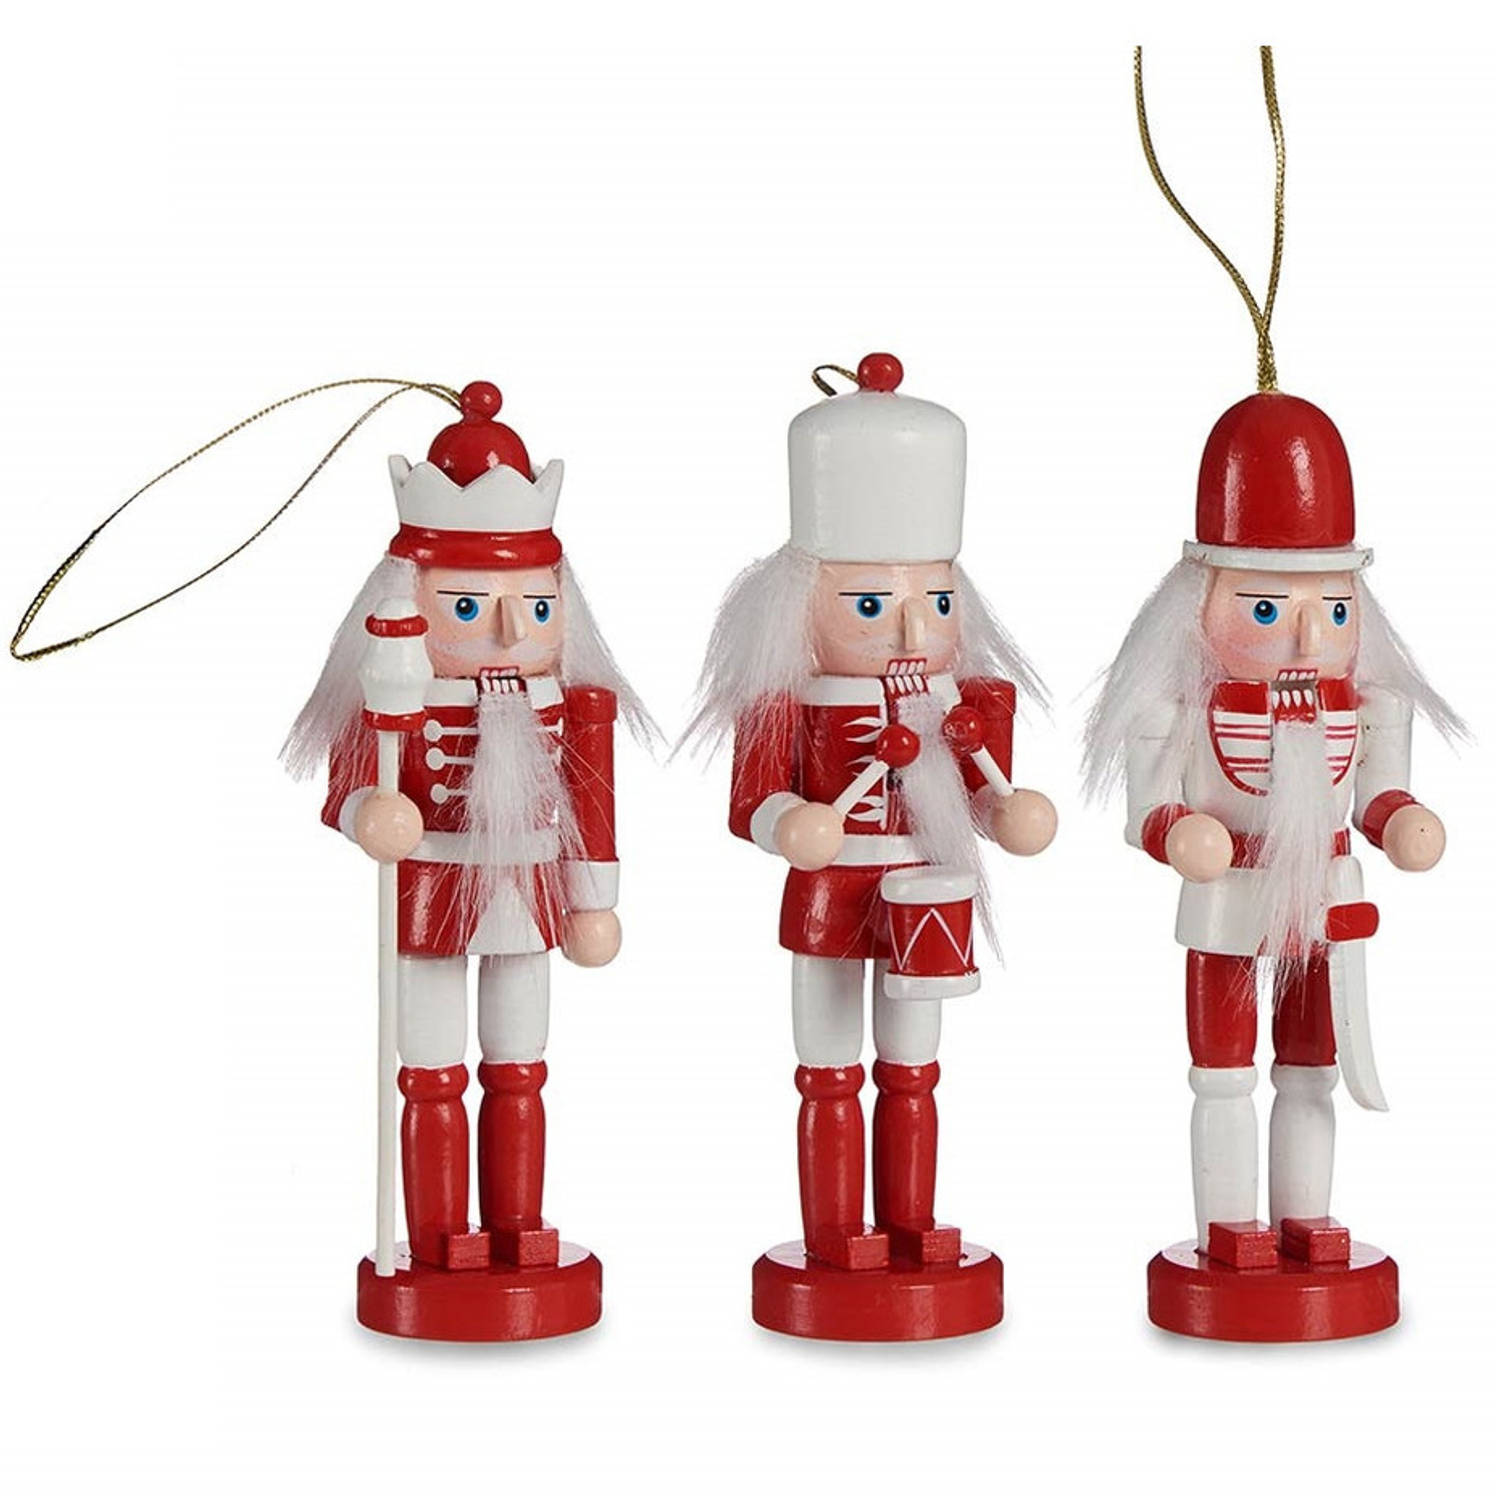 Krist+ kerstornamenten notenkrakers - 3x st- rood/wit 12,5 cm - hout - Kersthangers